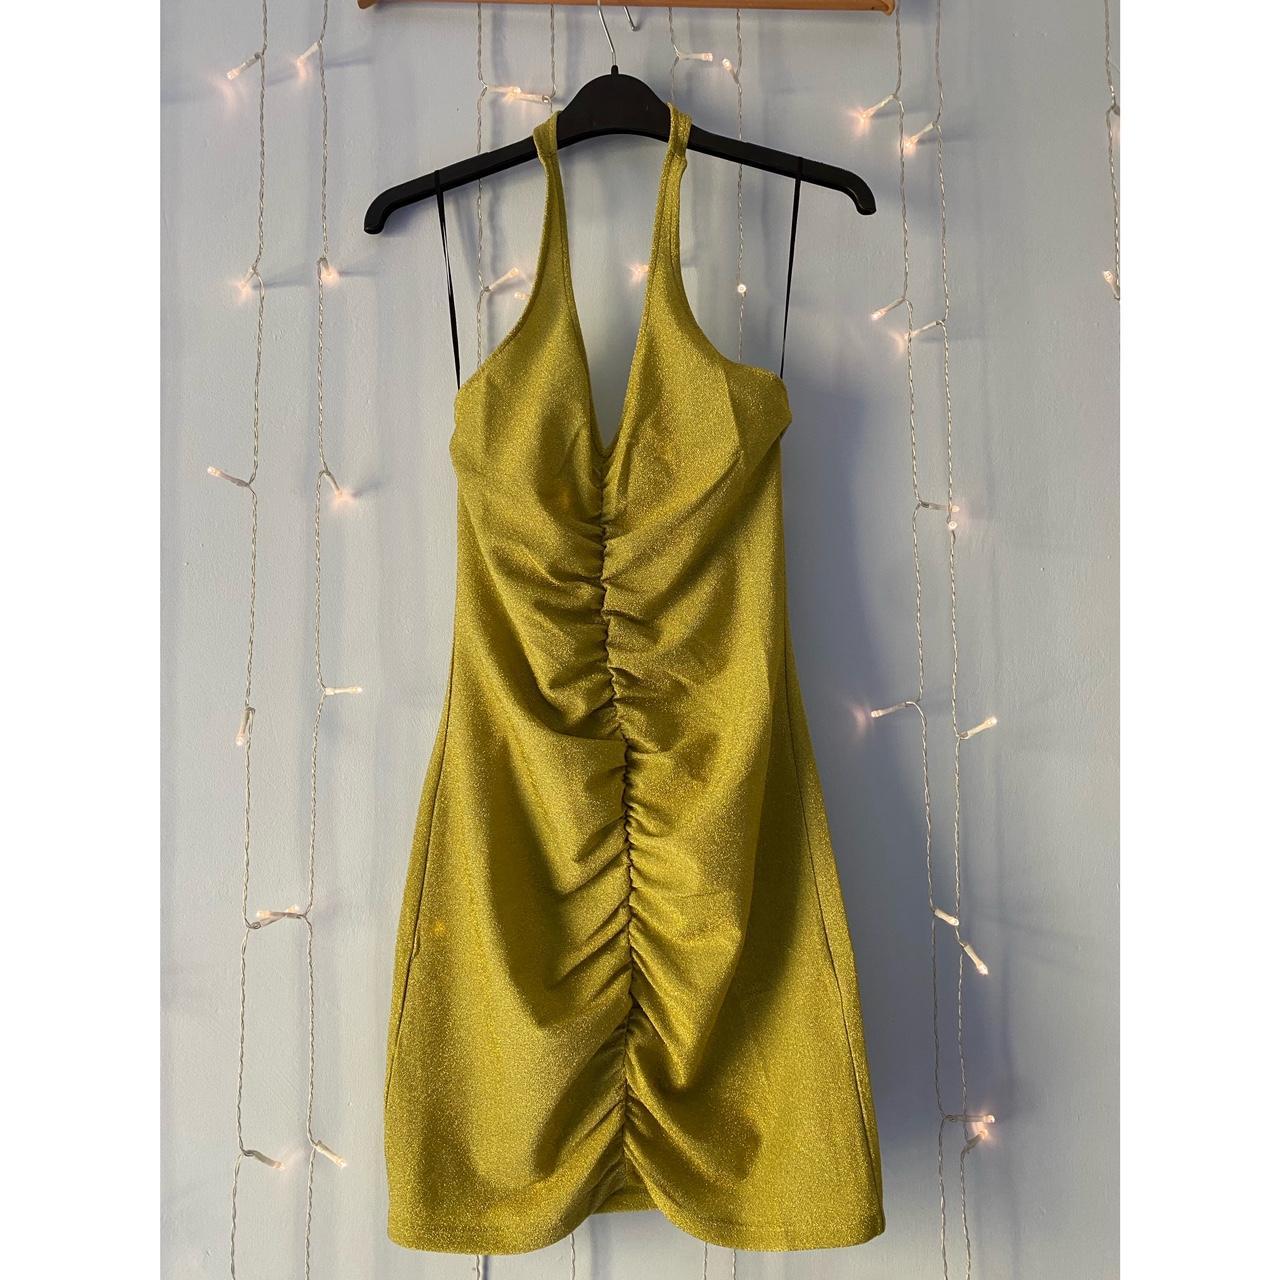 H&M Women's Green and Gold Dress | Depop